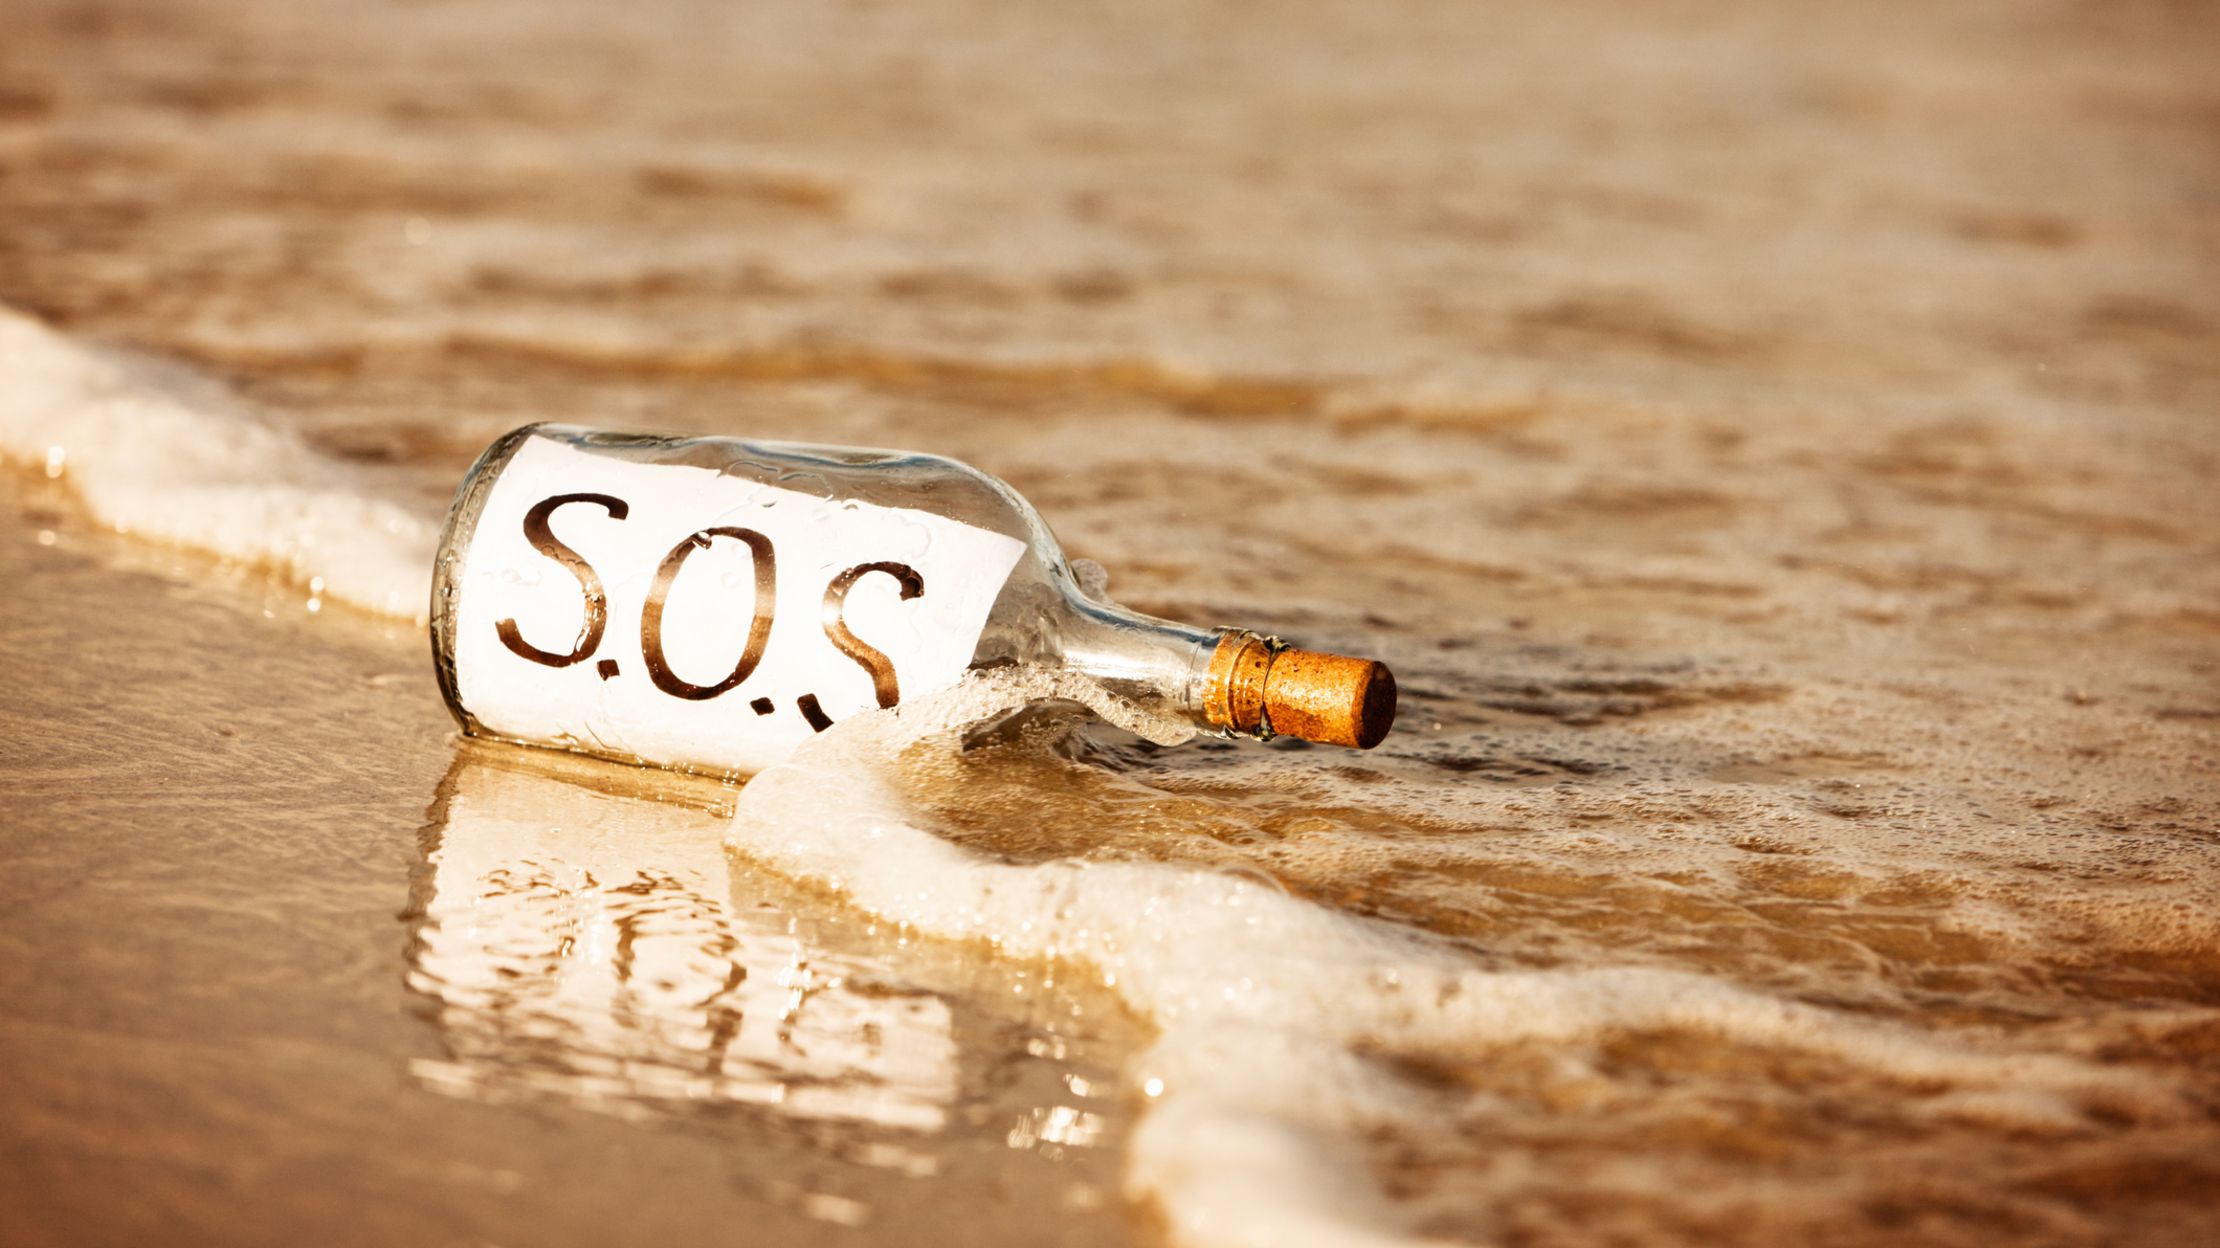 Tại sao khi gặp nạn người ta phát tín hiệu SOS?